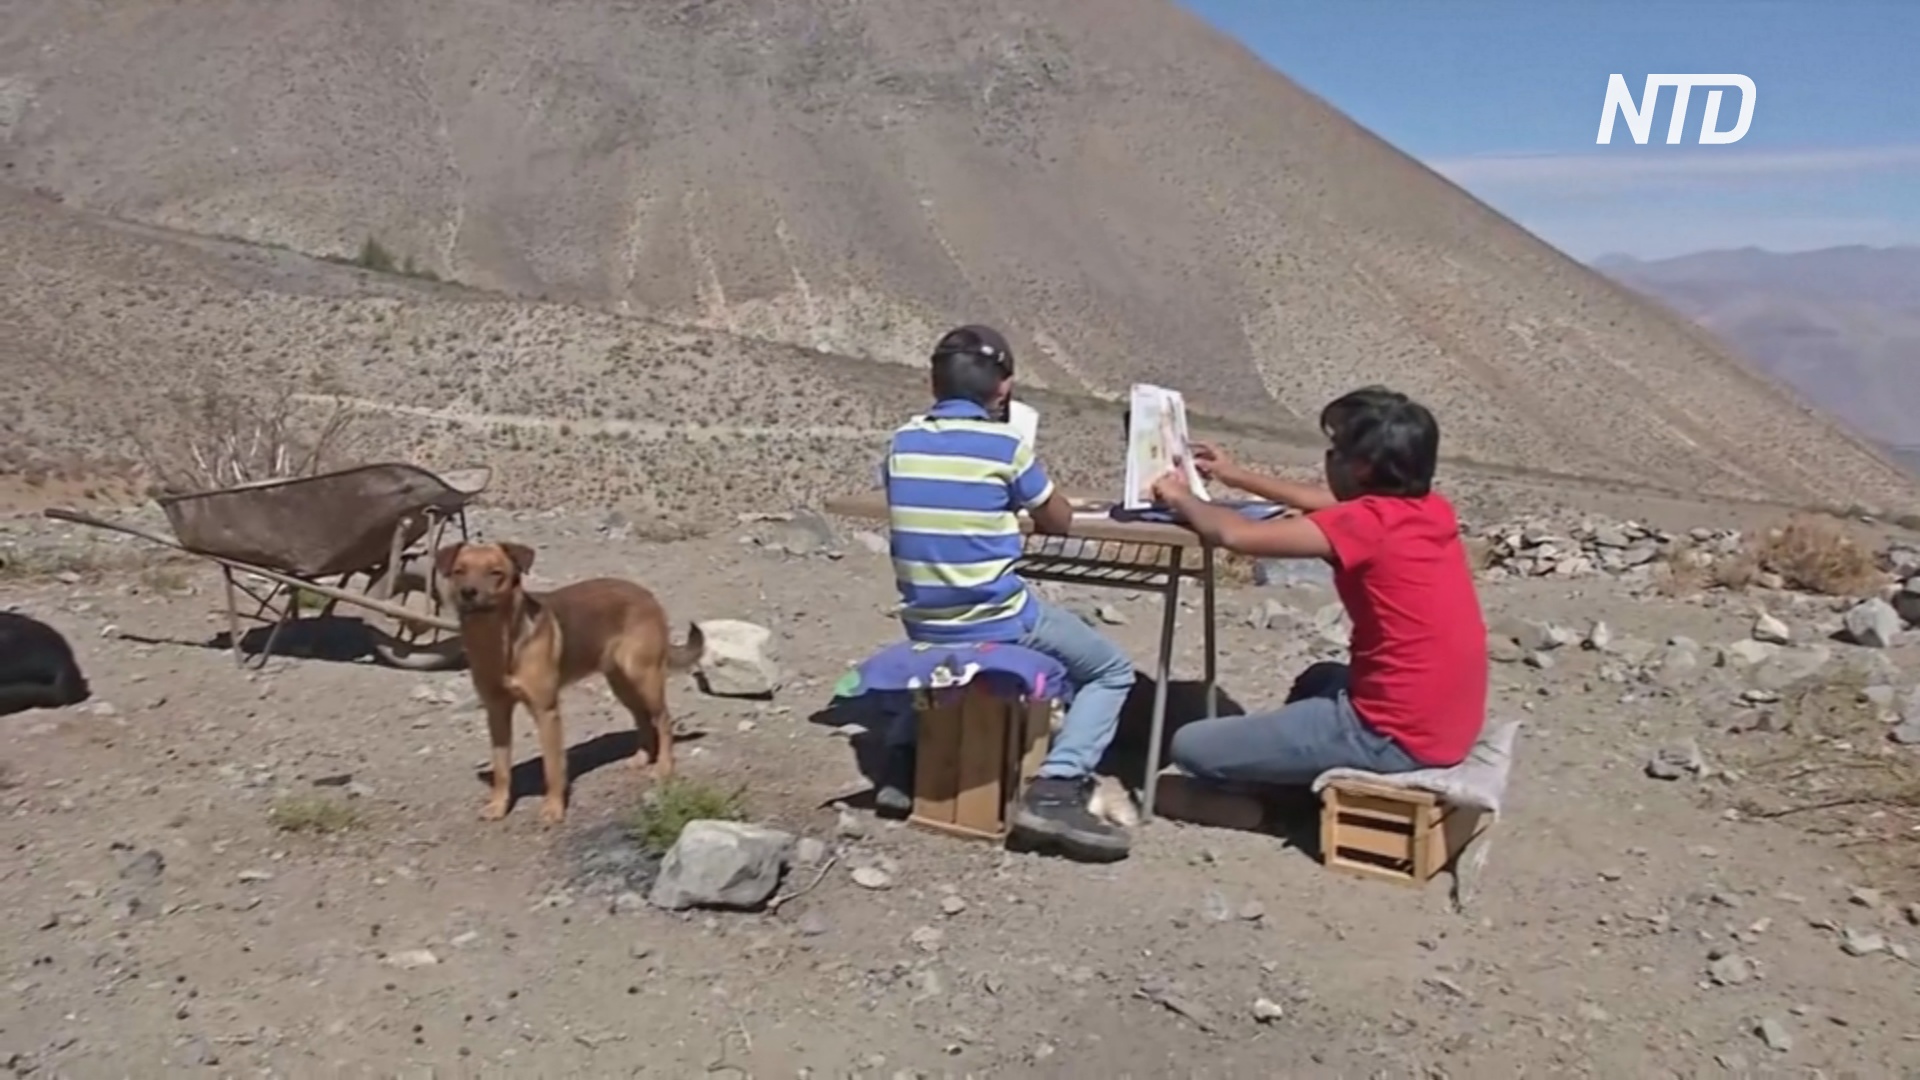 Школьники в Чили каждый день ходят на гору, чтобы посещать онлайн-уроки